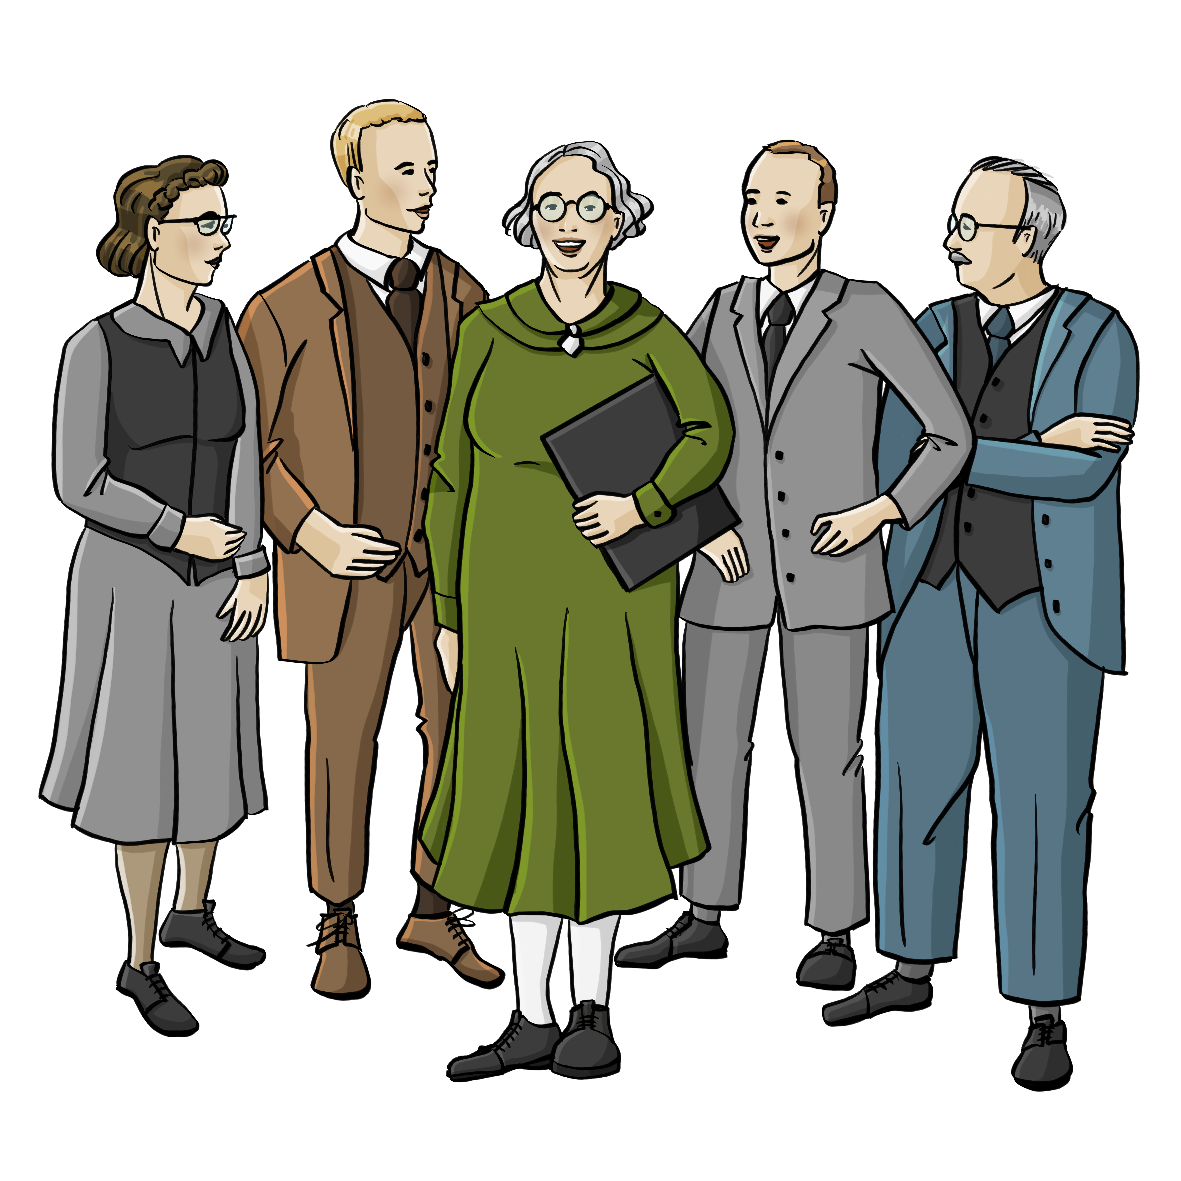 Eine Frau mit einem Klemmbrett unter dem Arm. Um sie herum stehen andere Frauen und Männer. Alle tragen Anzüge und Kleider im Stil der 50er Jahre.